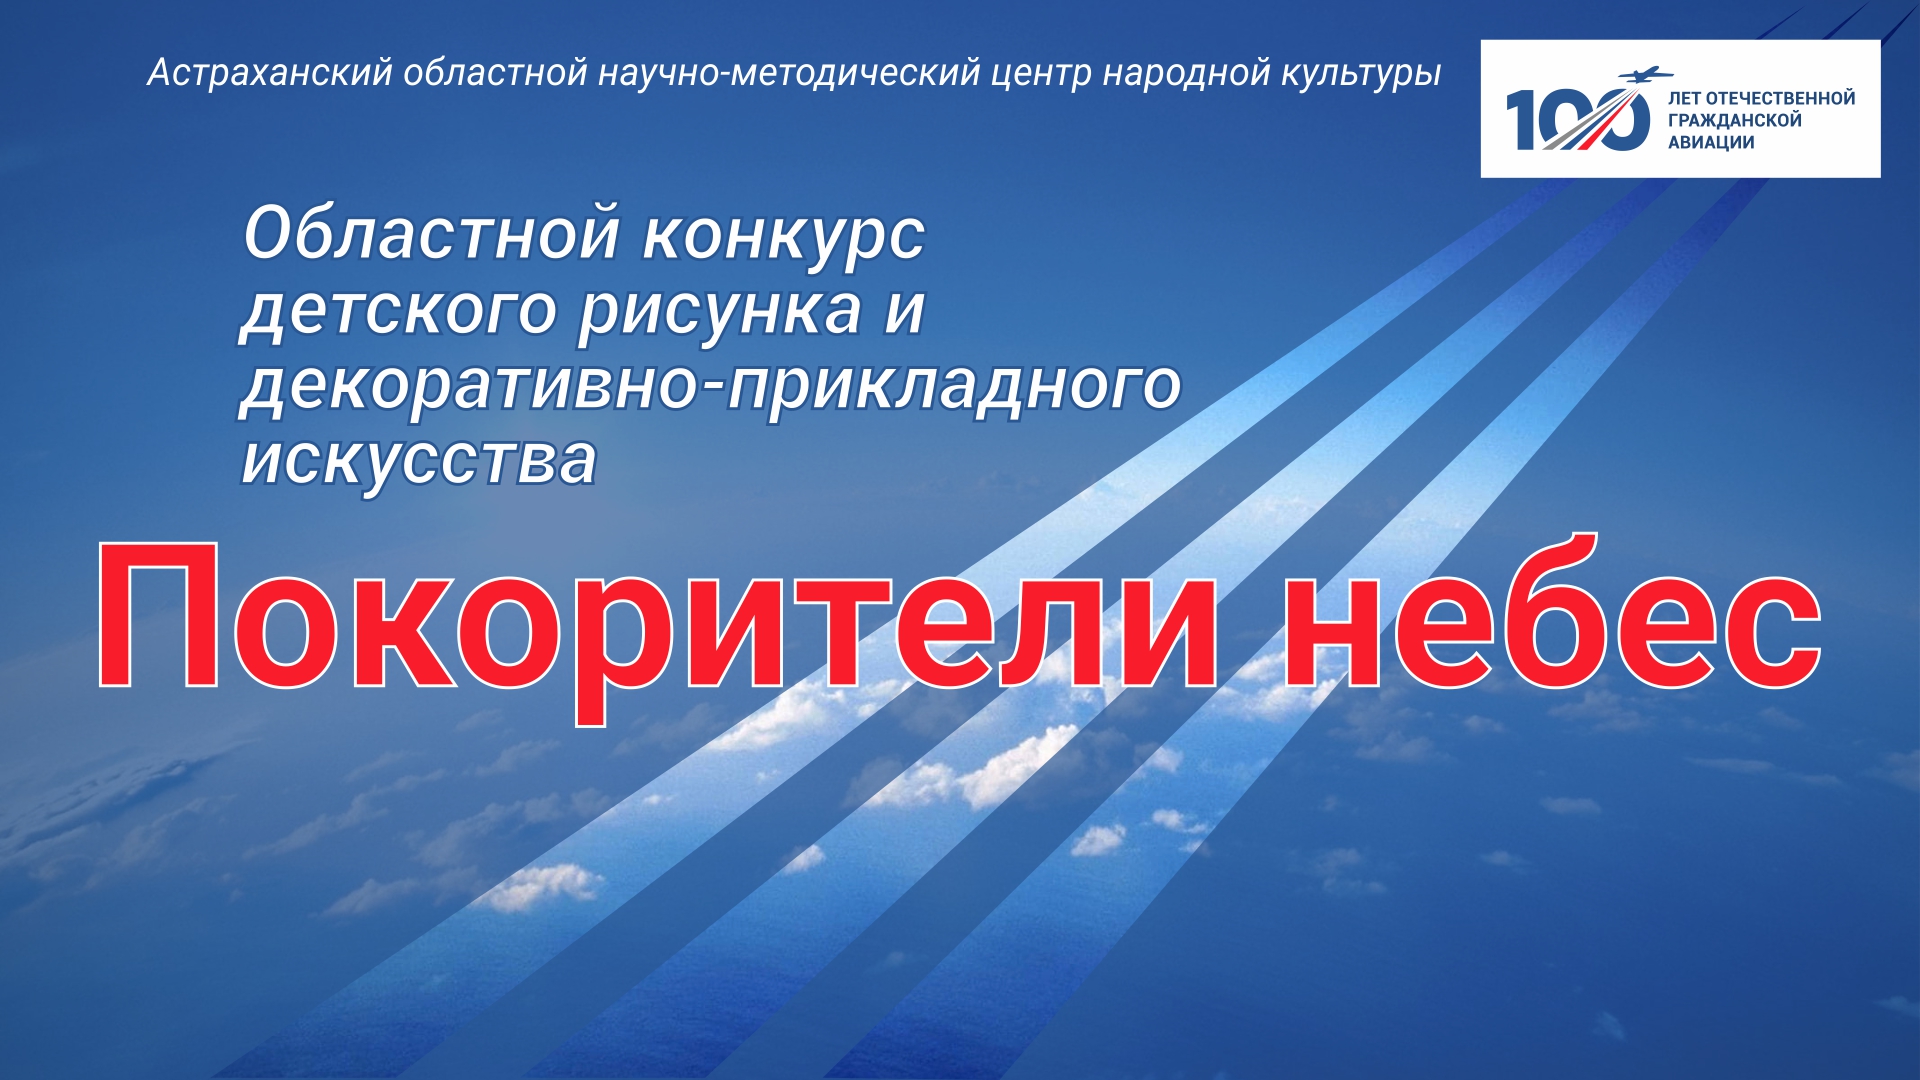 В Астраханской области стартовал конкурс «Покорители небес»